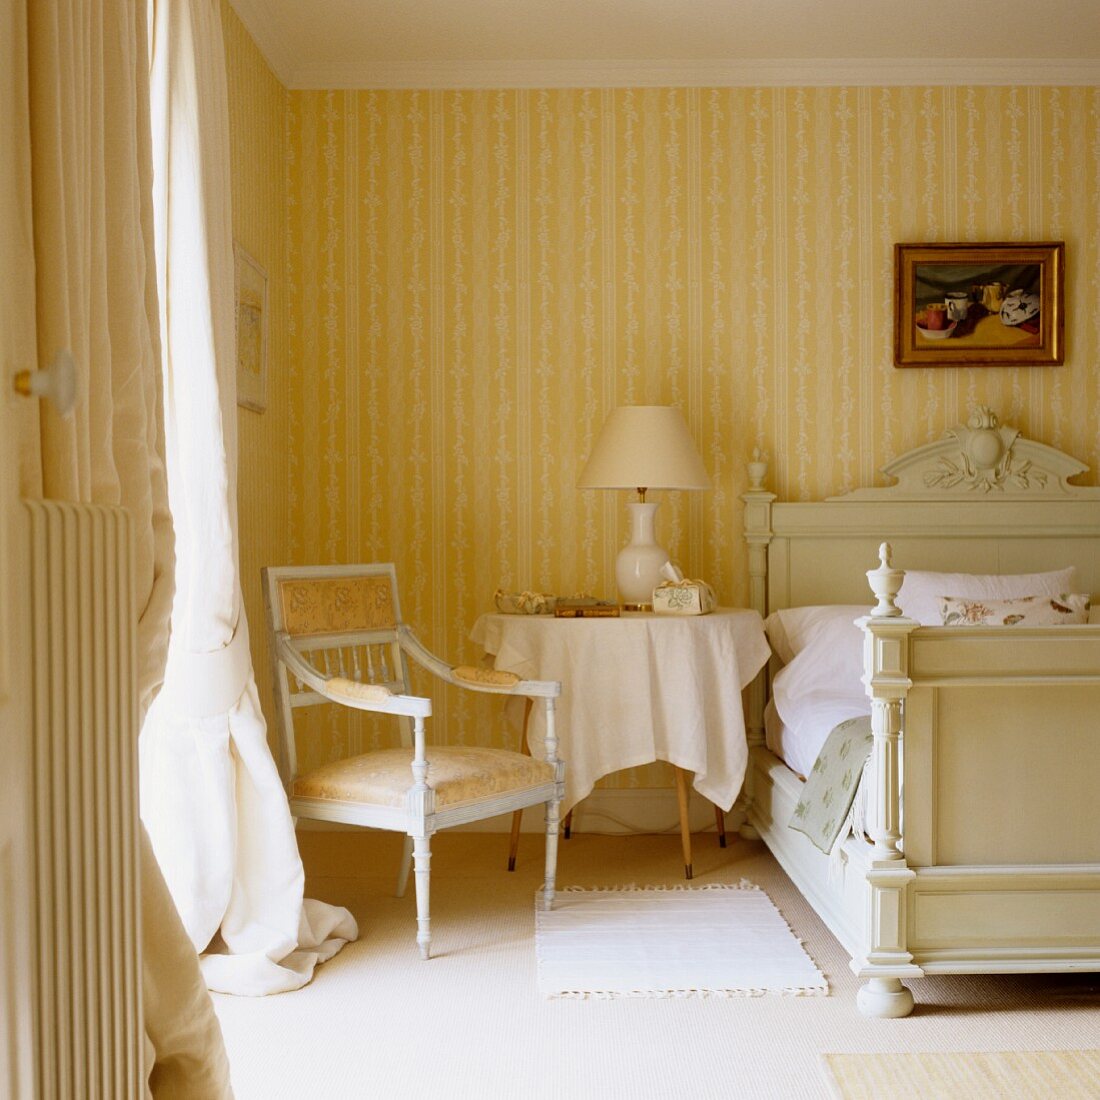 Stuhl im Rokokostil in Schlafzimmerecke vor Tapete mit weiss-gelben Streifen an Wand